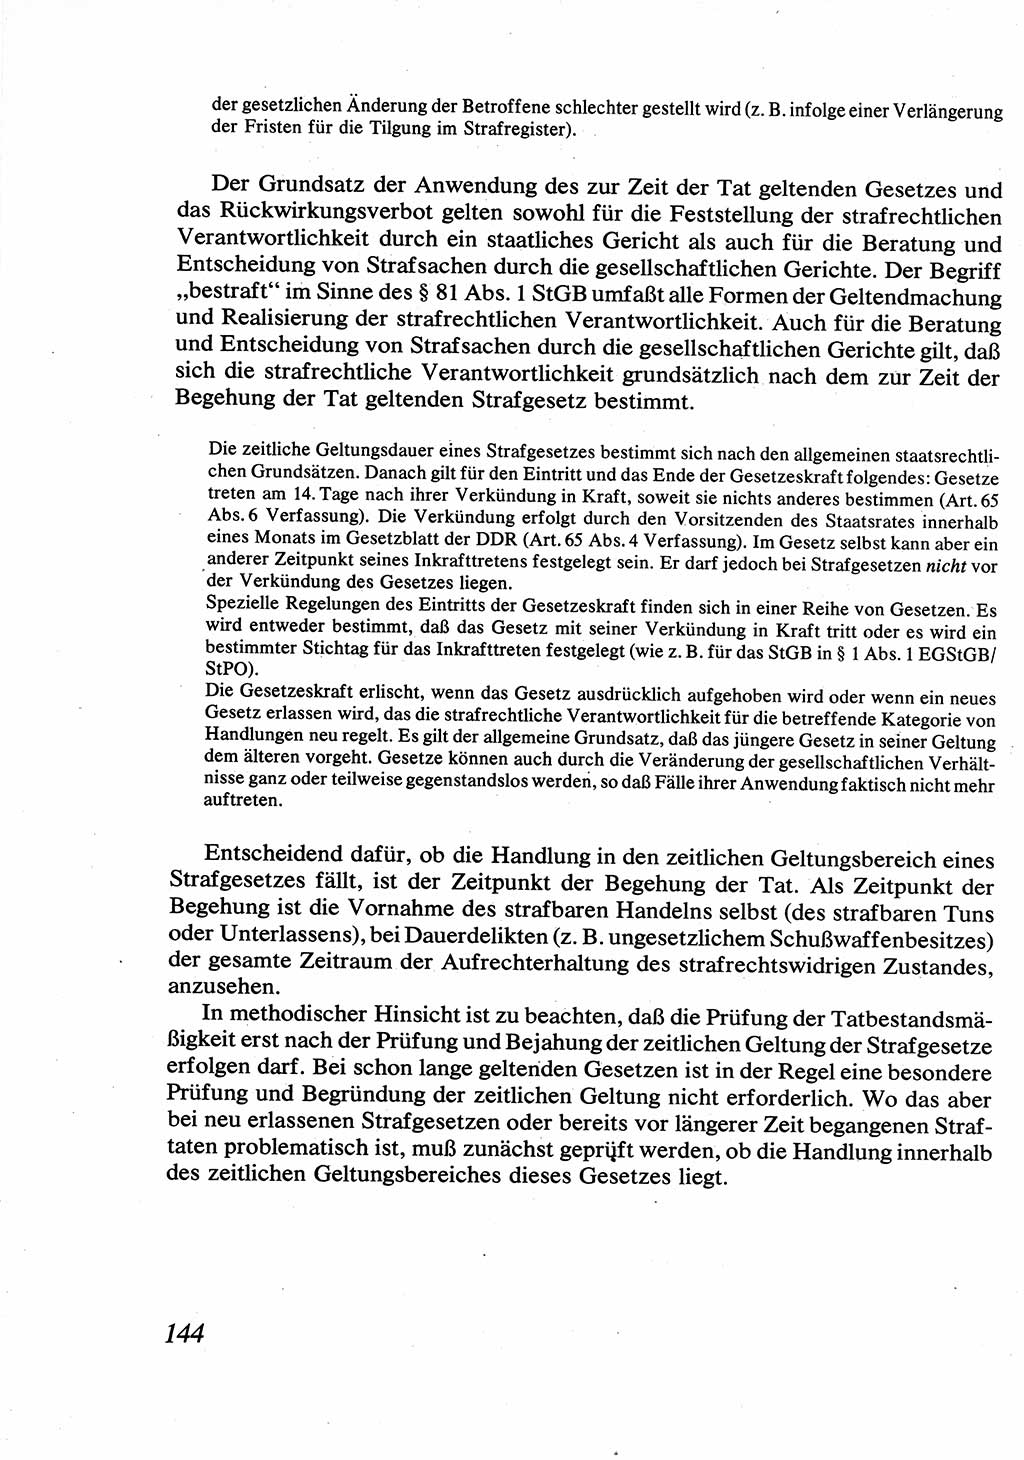 Strafrecht [Deutsche Demokratische Republik (DDR)], Allgemeiner Teil, Lehrbuch 1976, Seite 144 (Strafr. DDR AT Lb. 1976, S. 144)